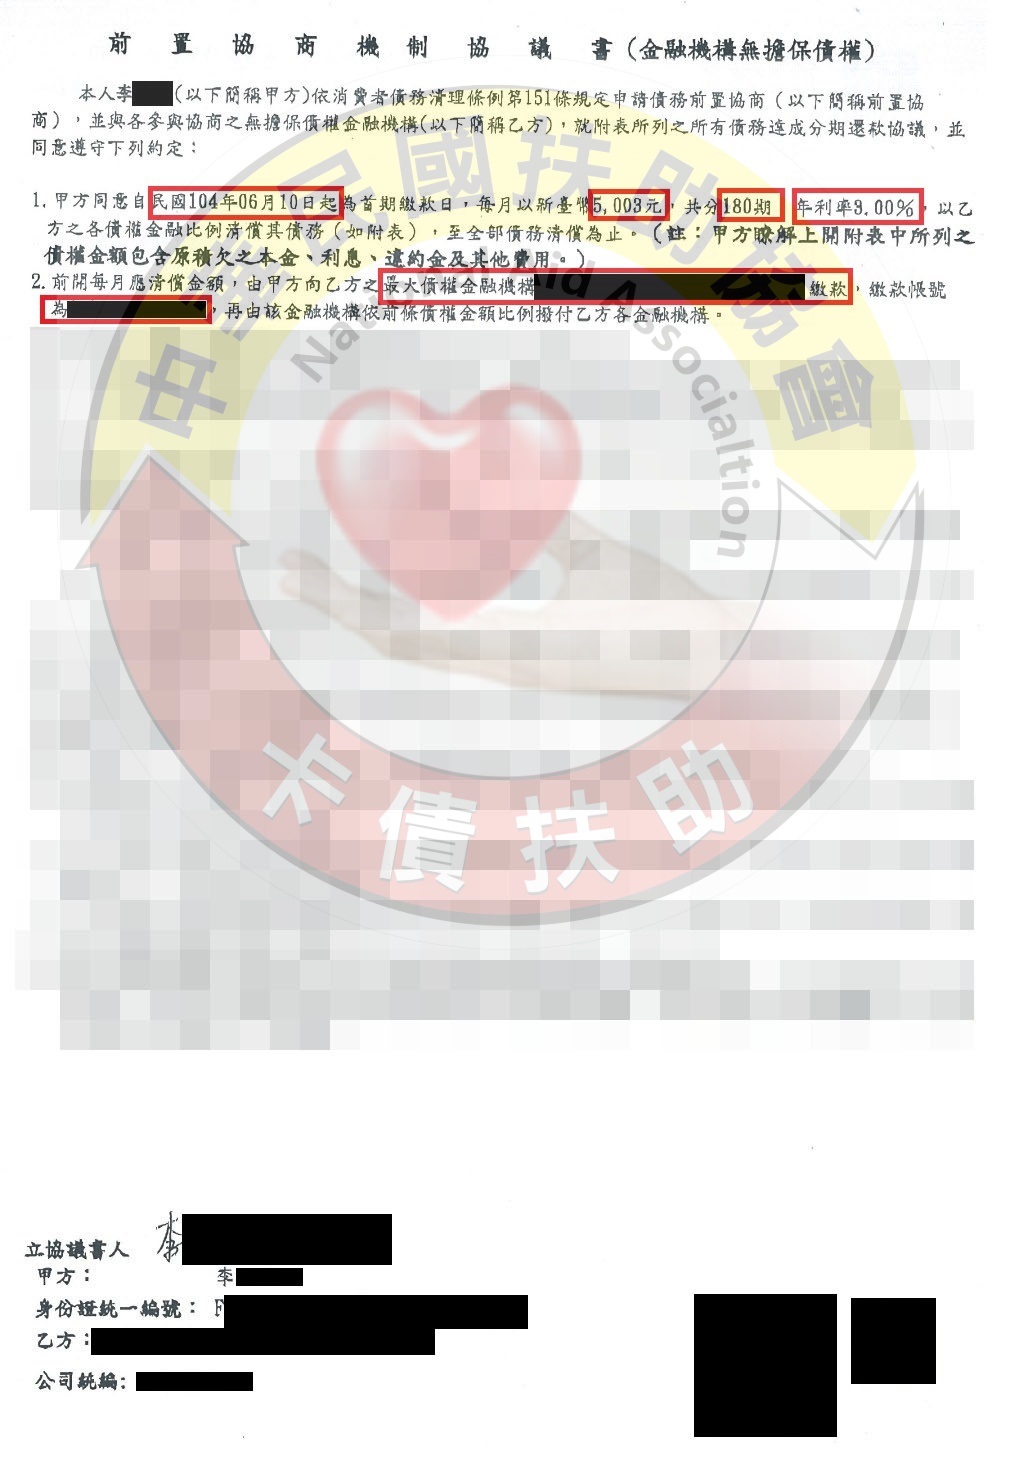 新北李小姐-協商成功依180期3%月付5,003元